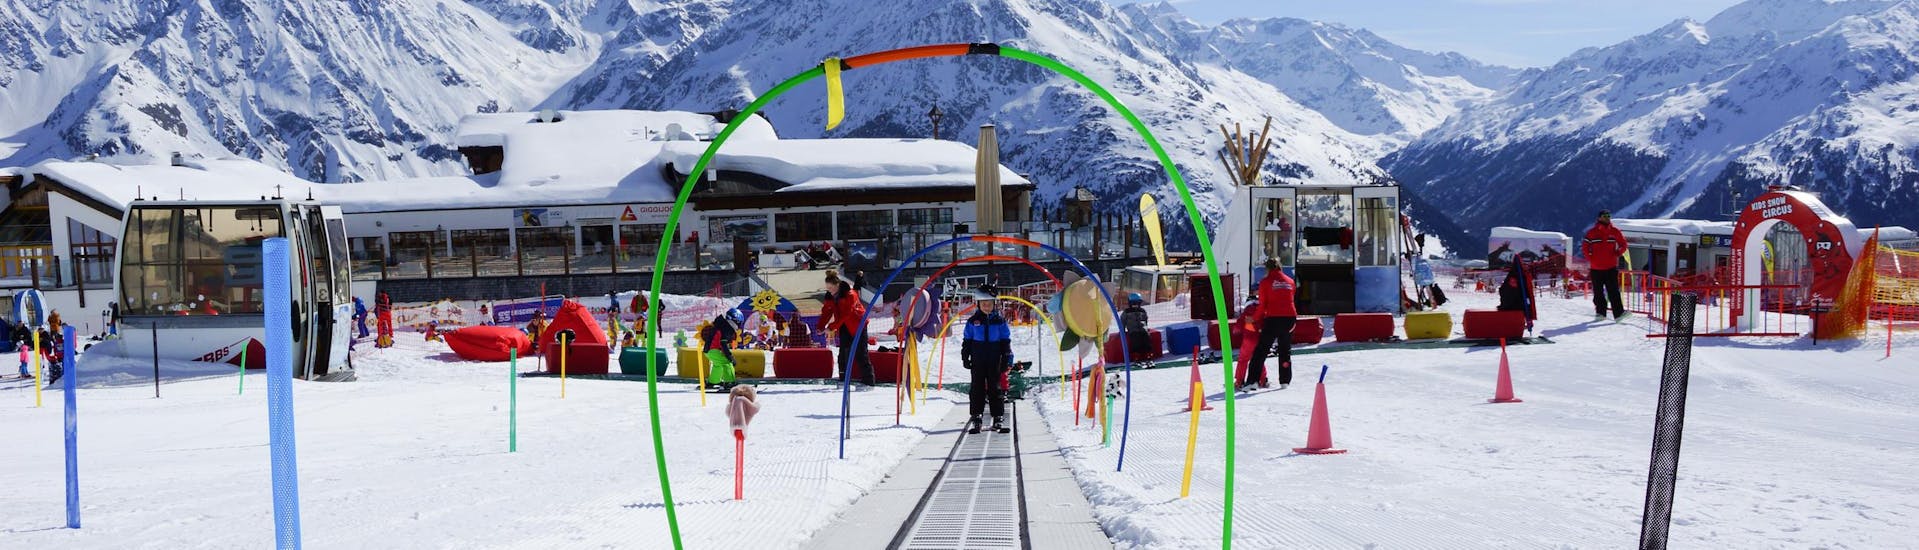 Skilessen voor kinderen (9-15 j.) voor alle niveaus incl. skiverhuur.